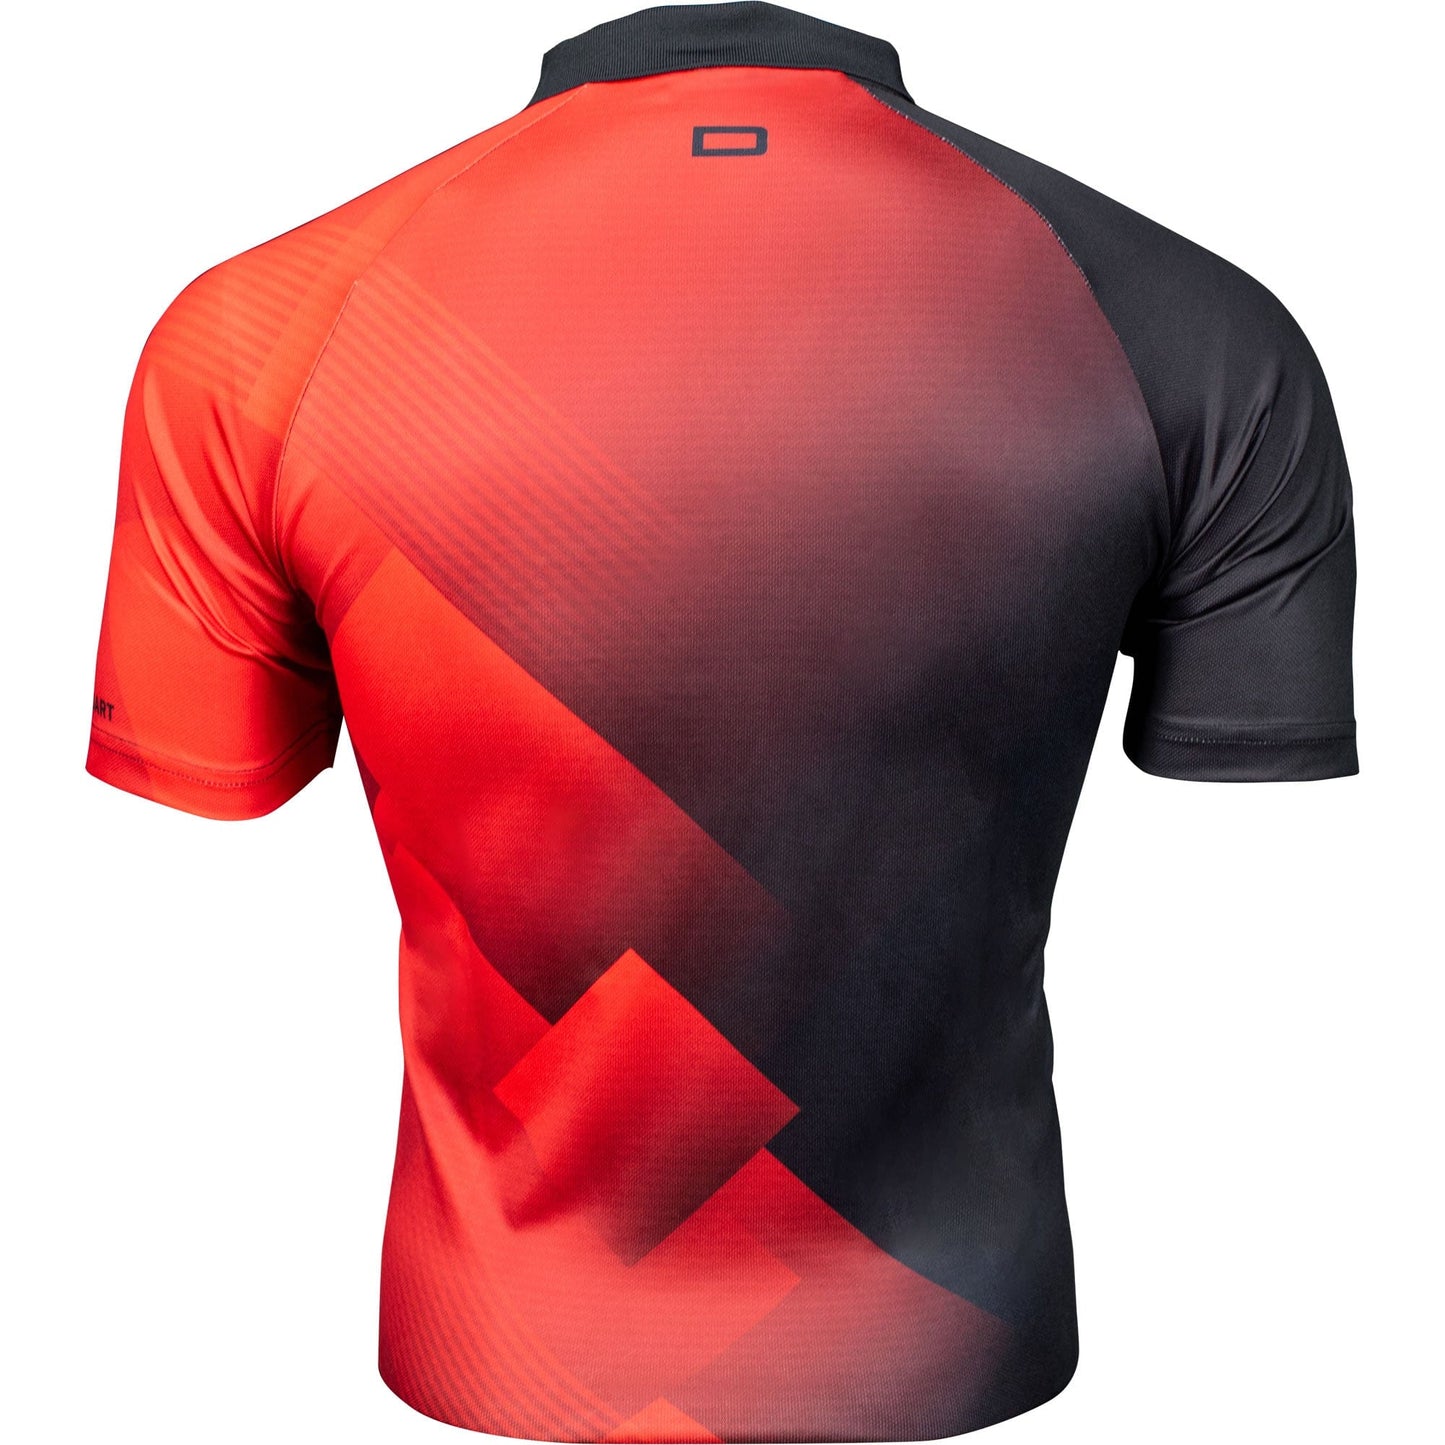 Datadart Vertex Dart Shirt - Comfort - Red